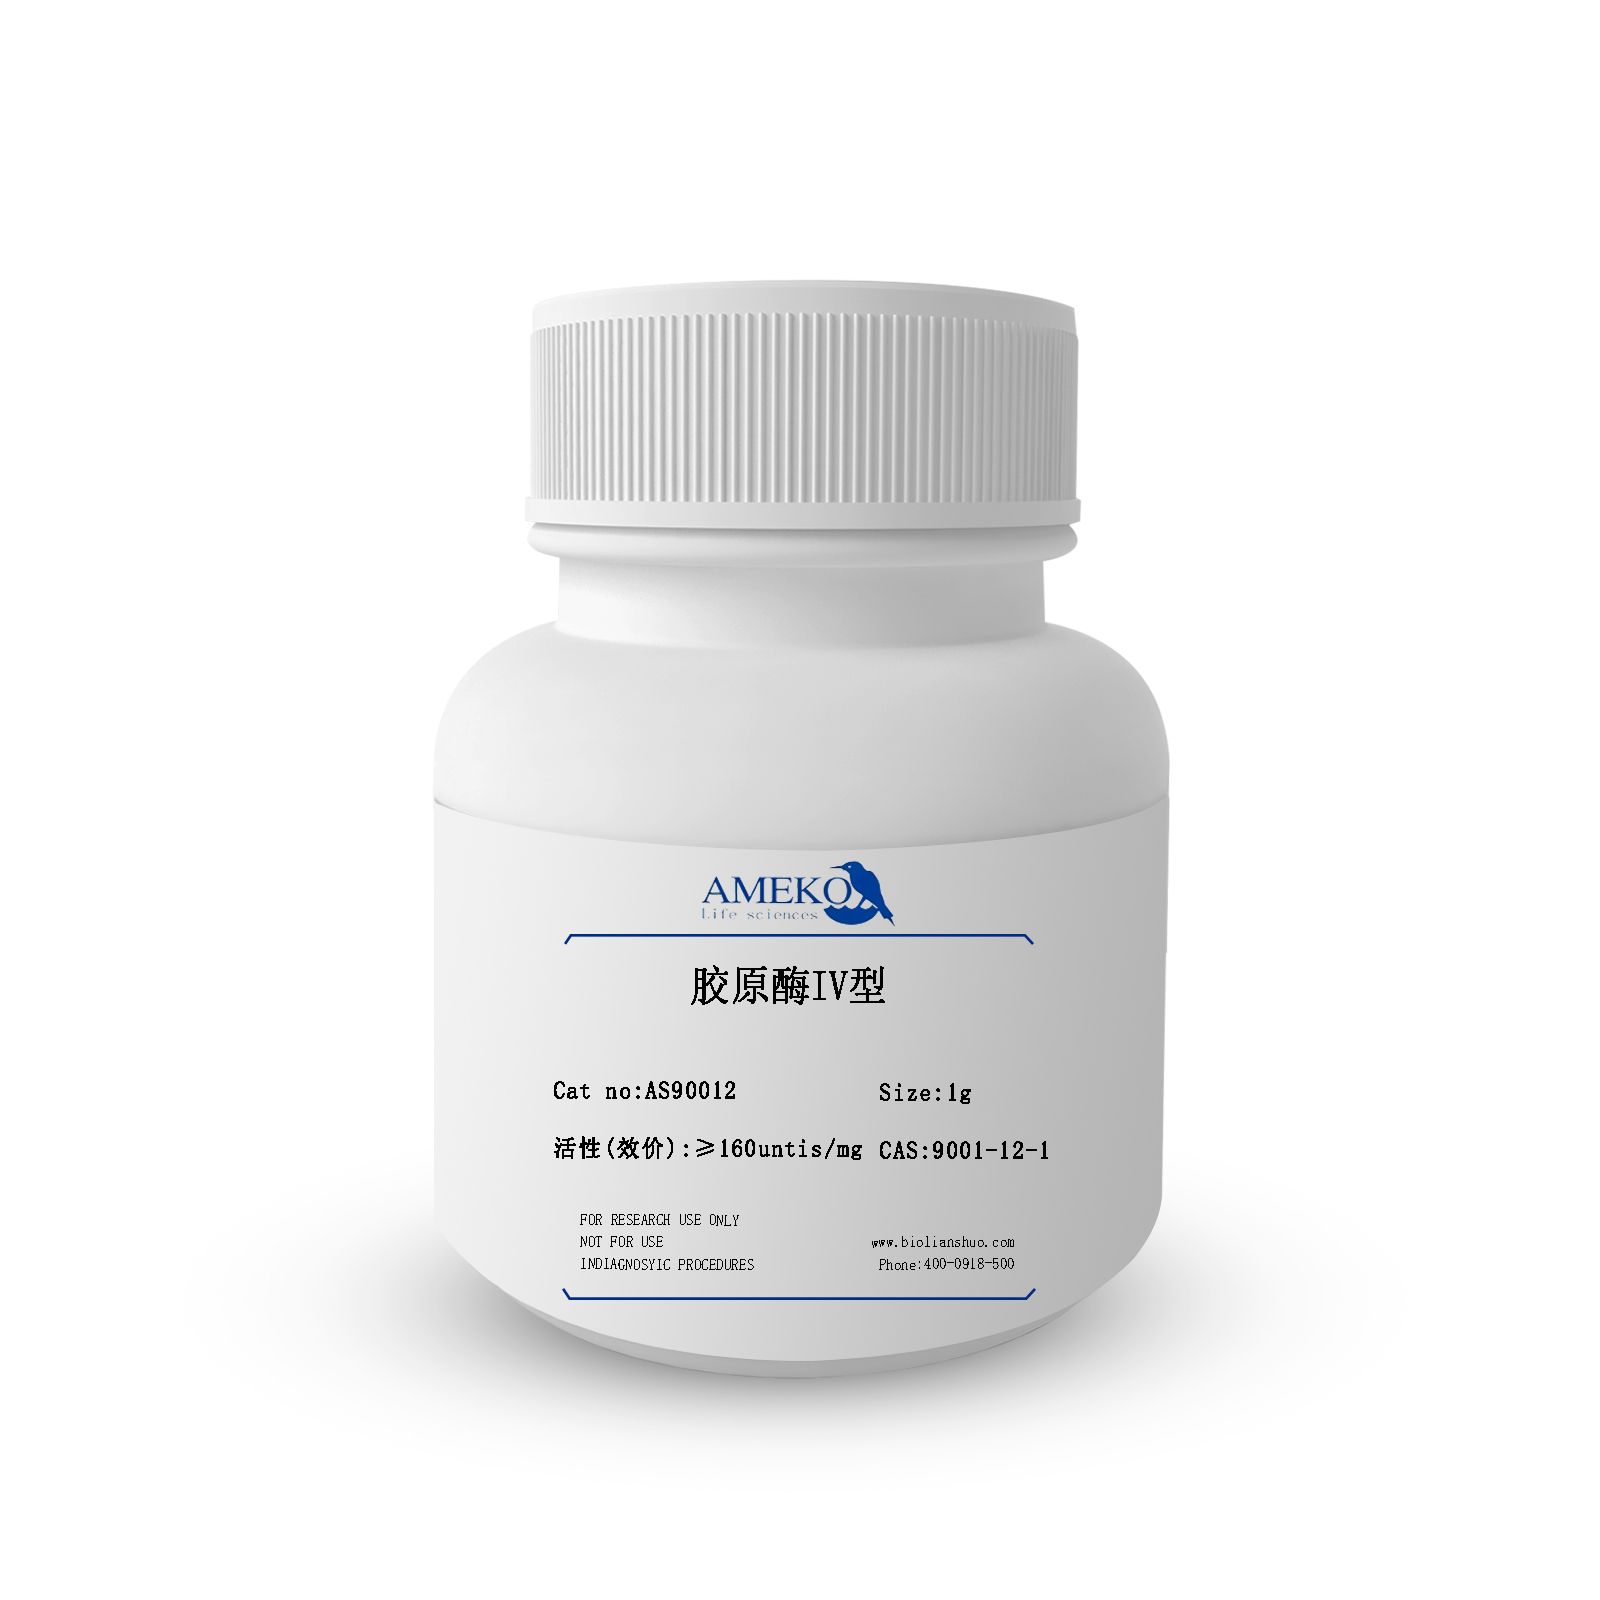 胶原酶IV型,货号AS90012-1G，CAS号9001-12-1